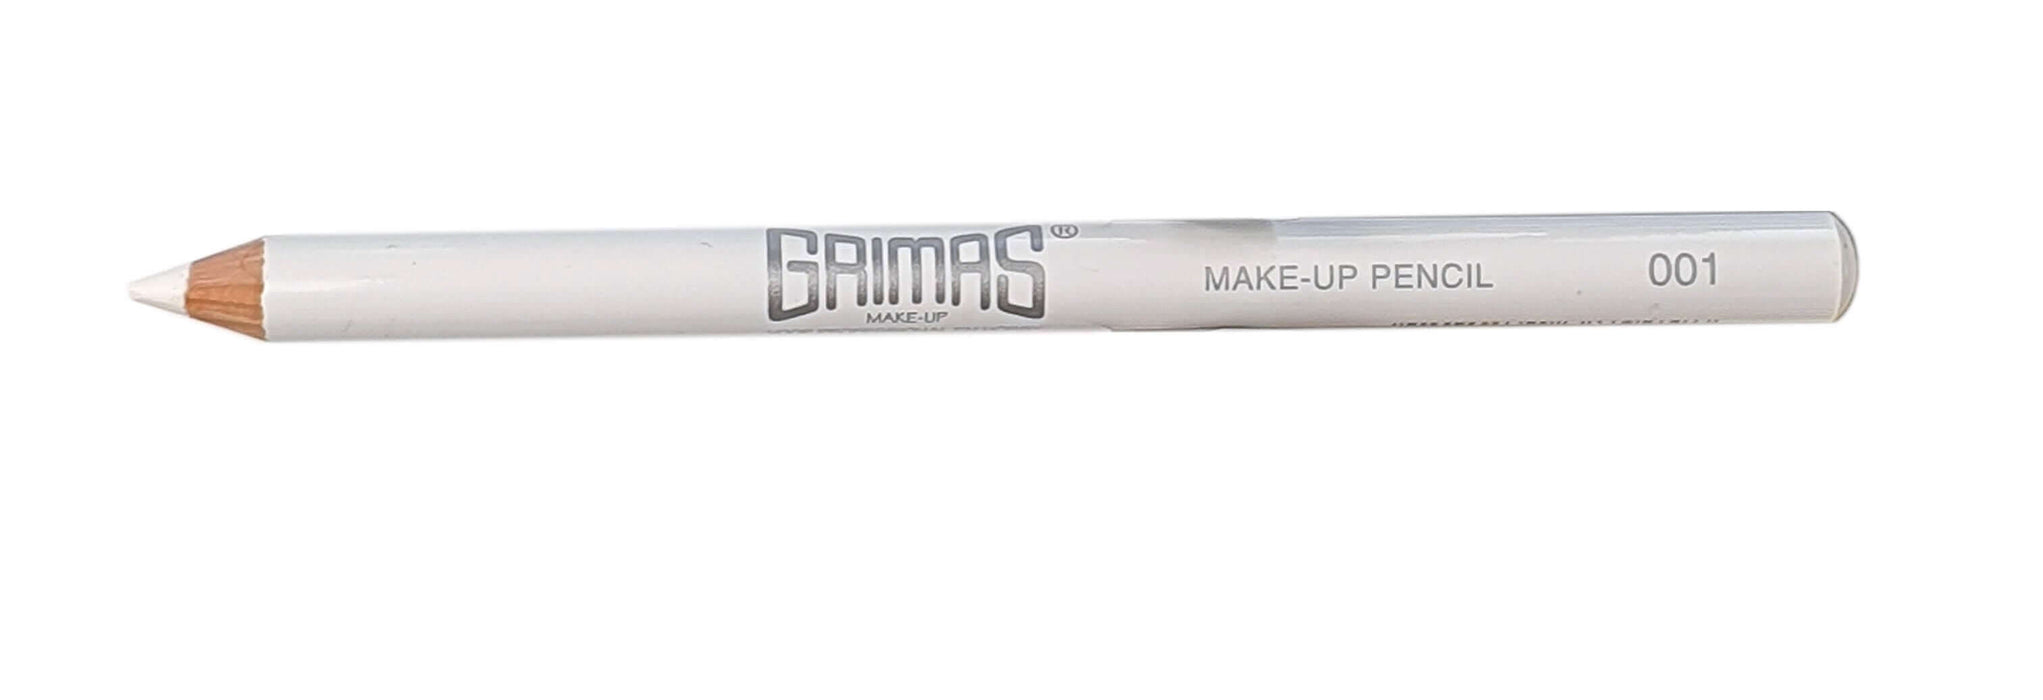 Grimas Make-up pencil